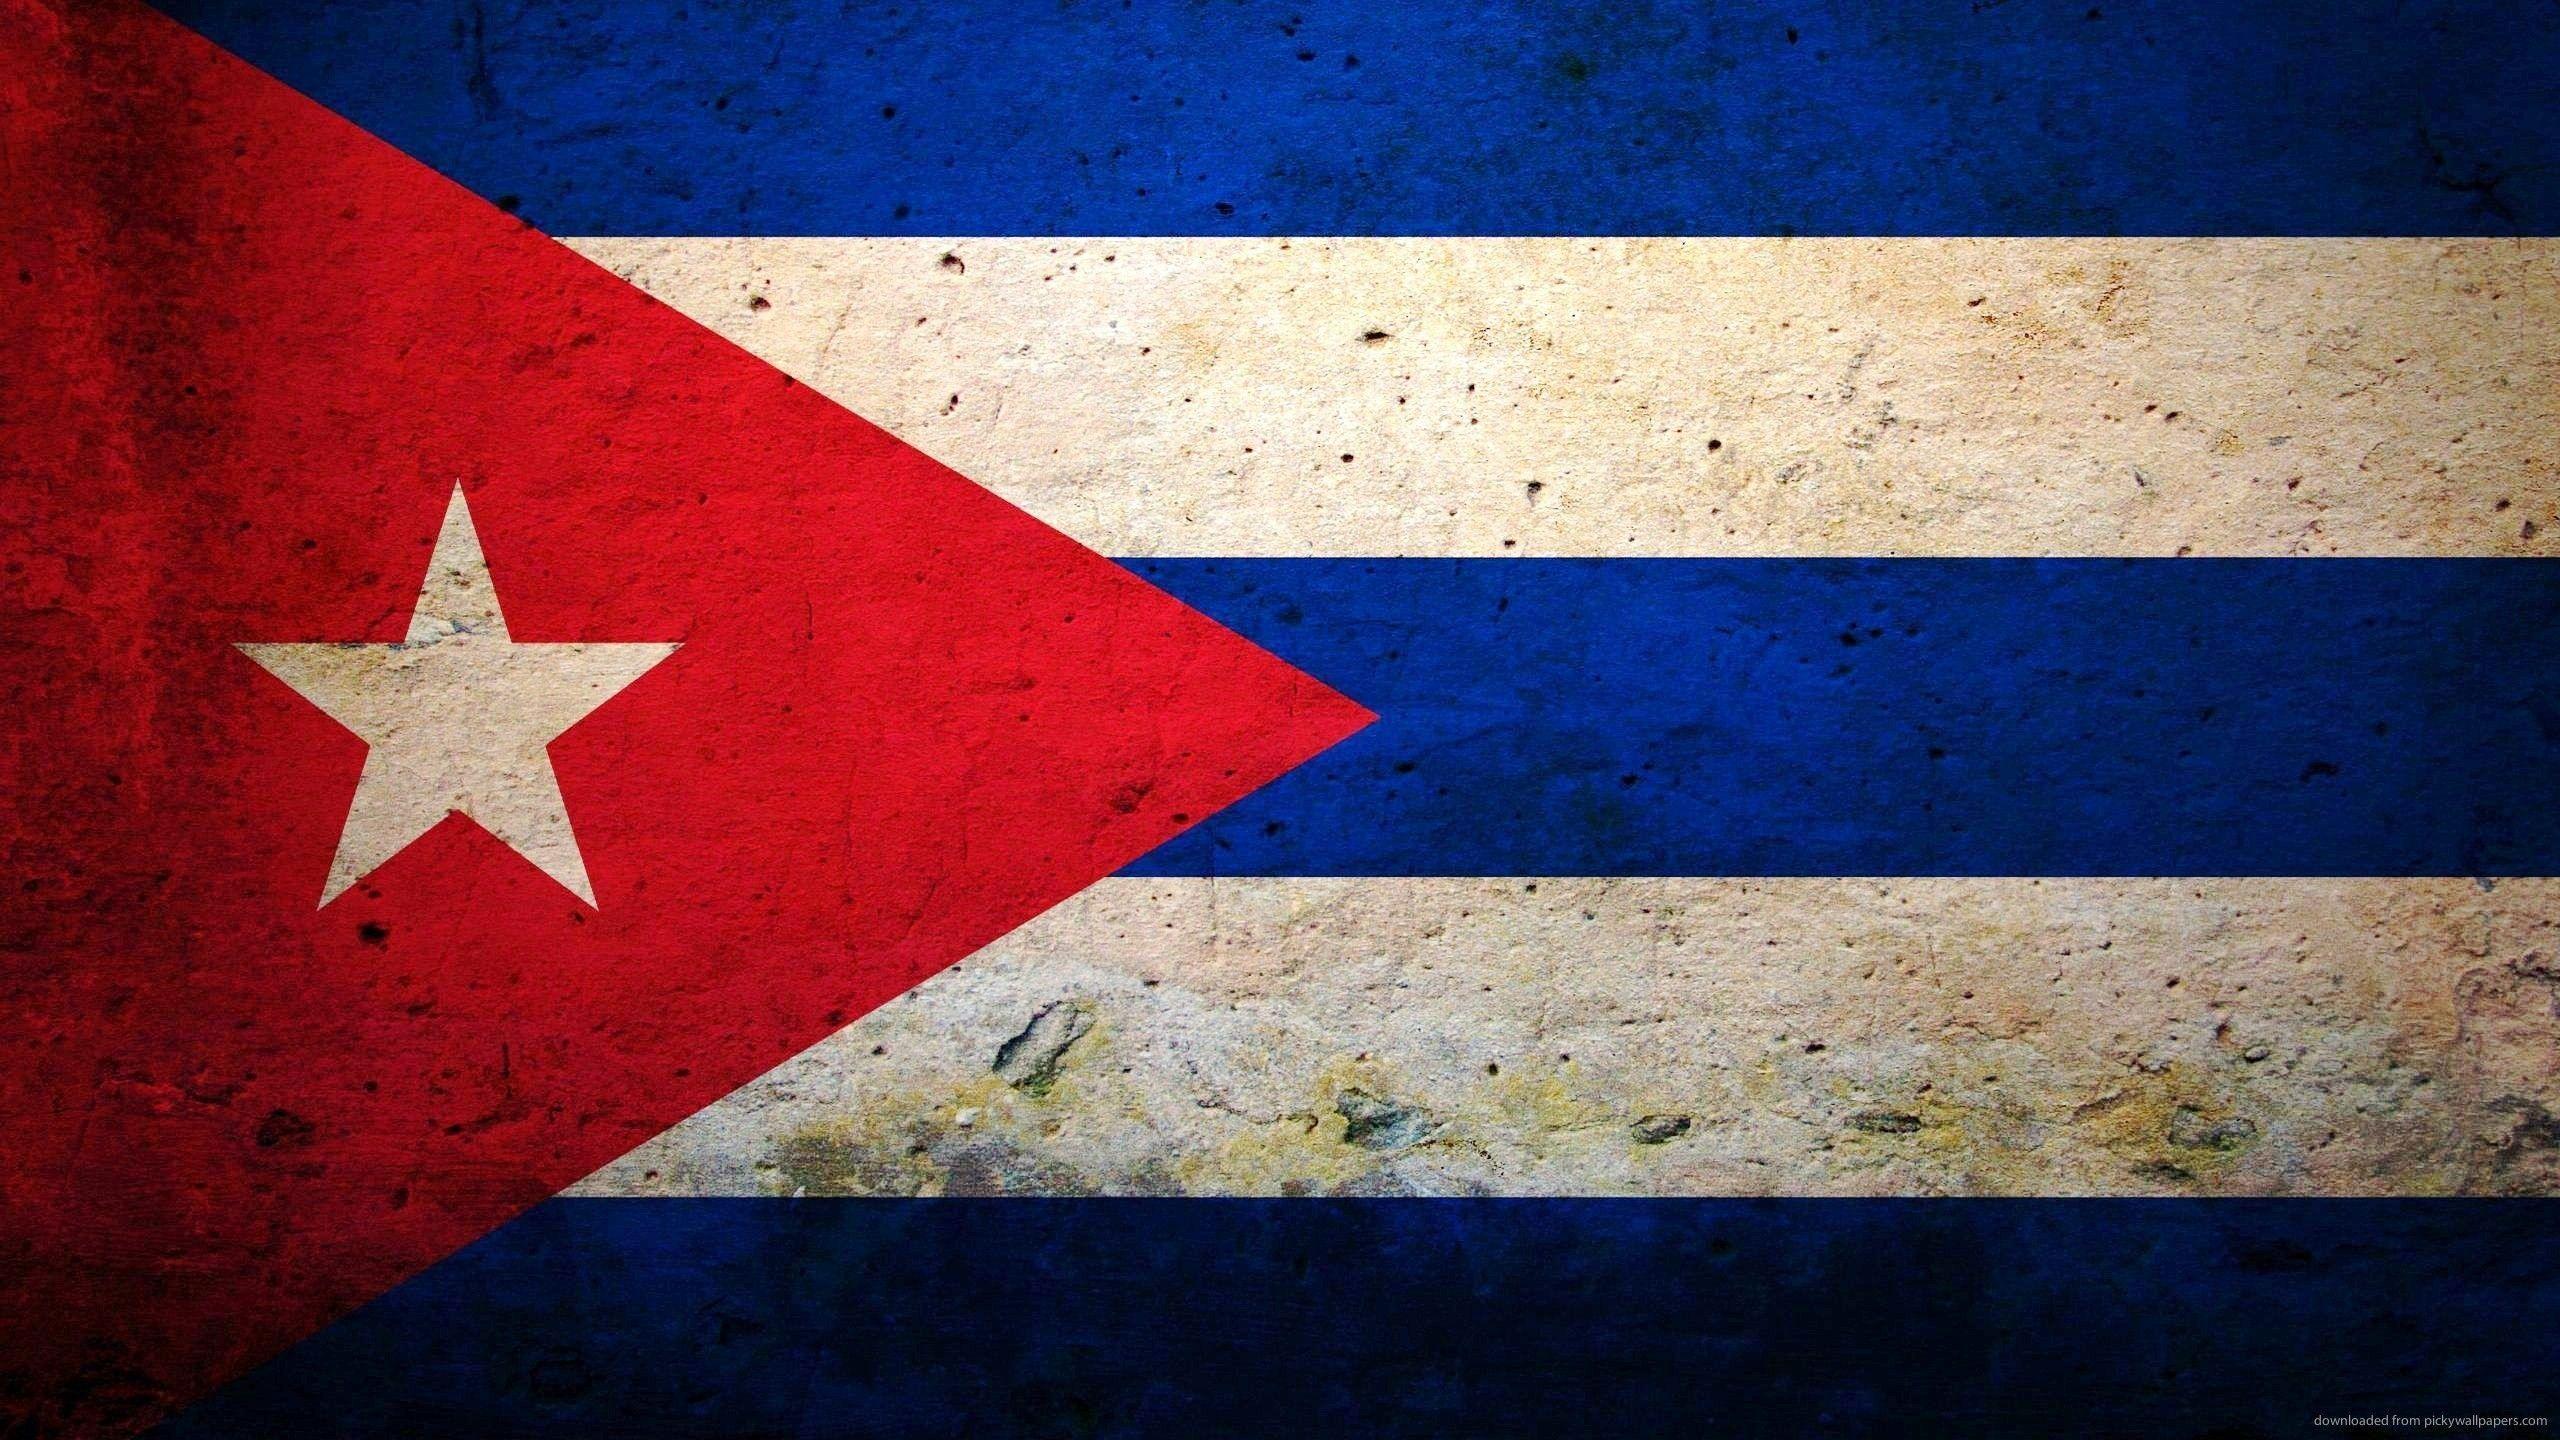 Download 2560x1440 Cuba Flag Wallpaper